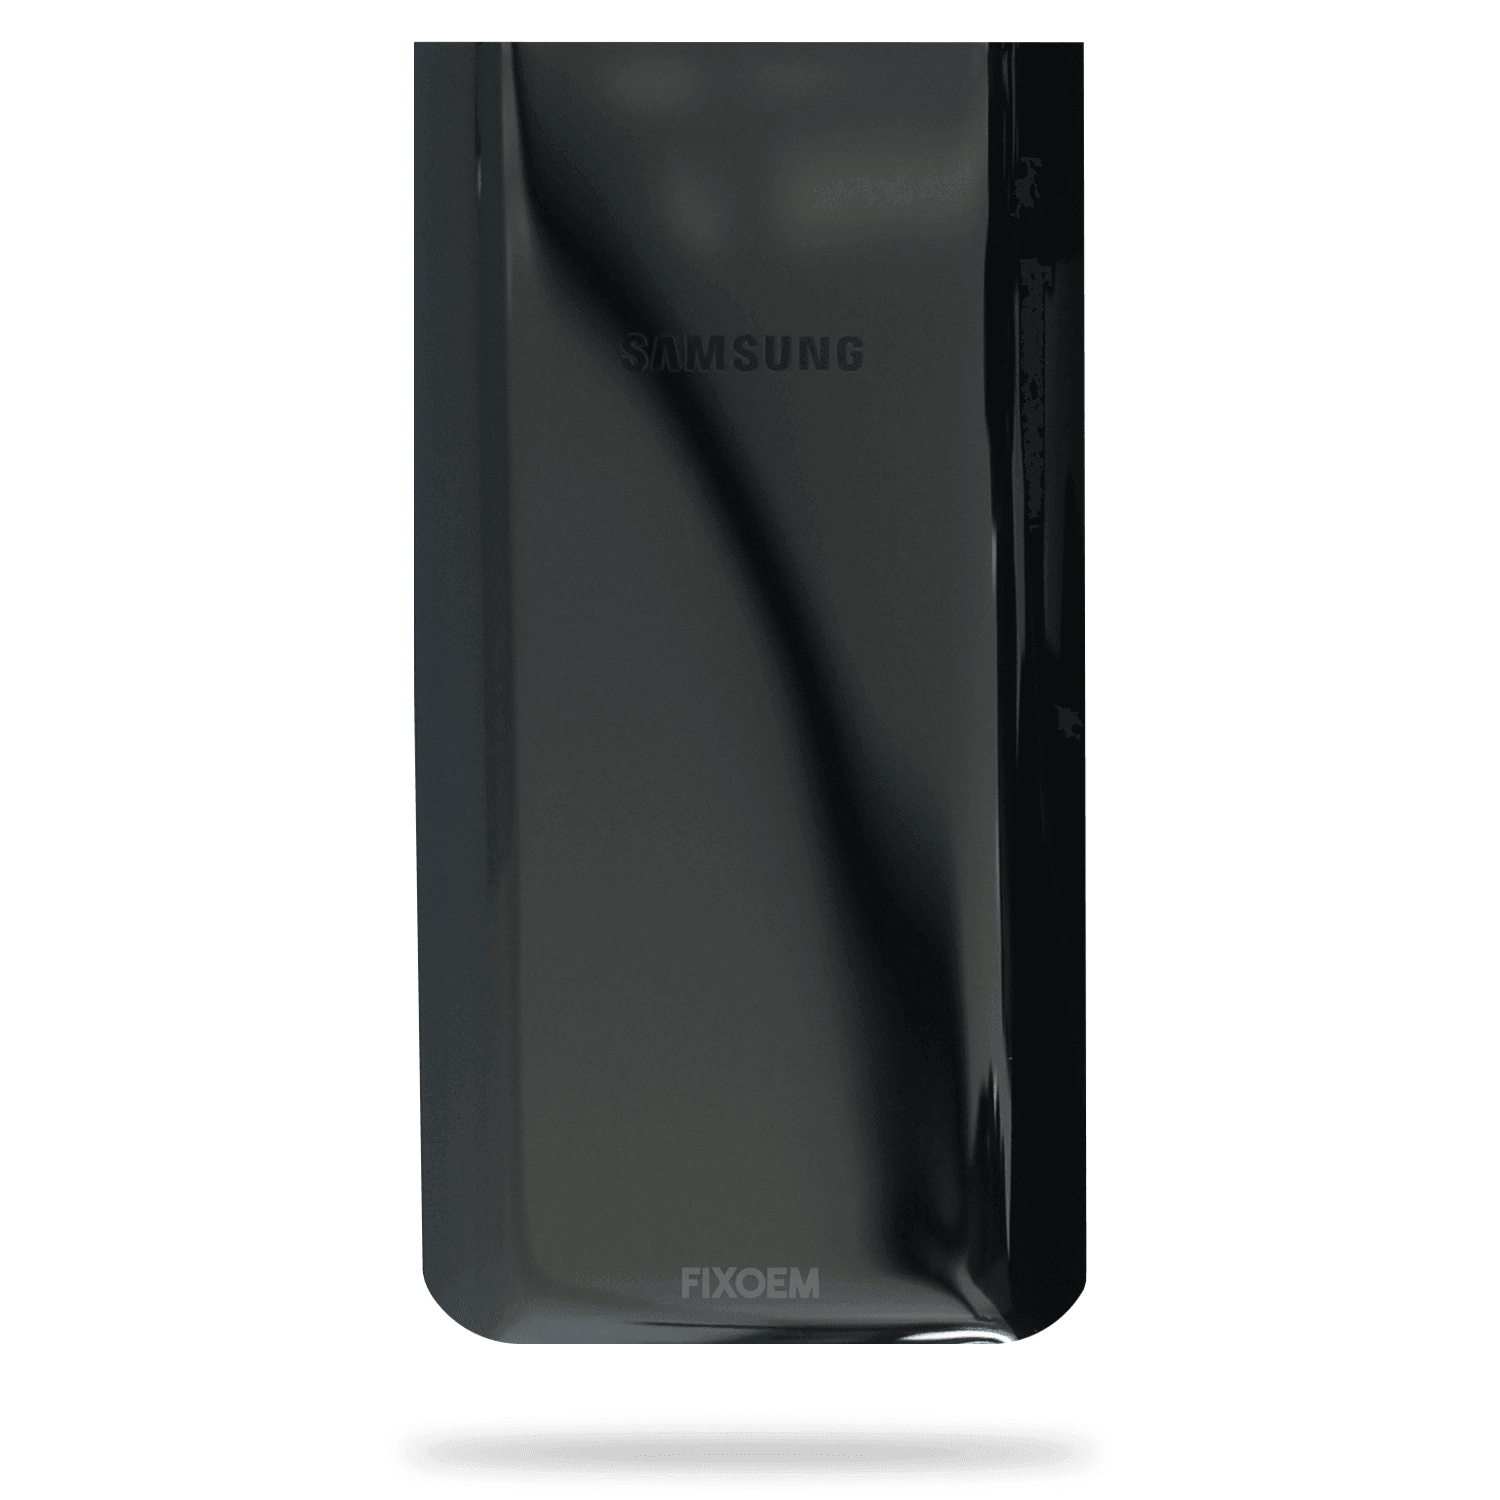 Tapa Trasera Samsung A80 Sm-A805F a solo $ 60.00 Refaccion y puestos celulares, refurbish y microelectronica.- FixOEM